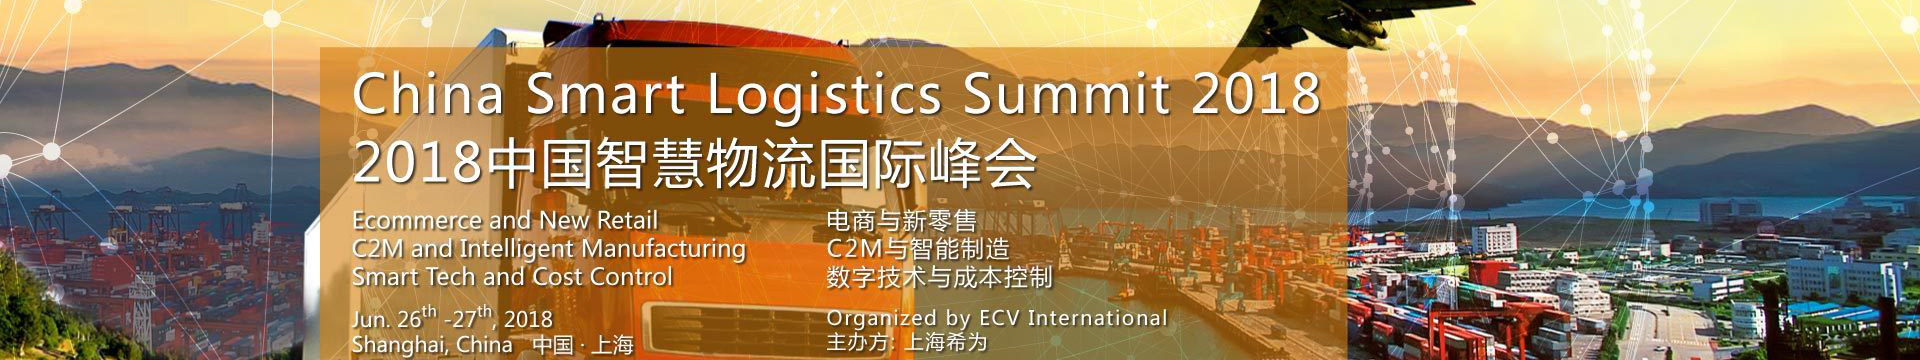 2018年中国智慧物流国际峰会